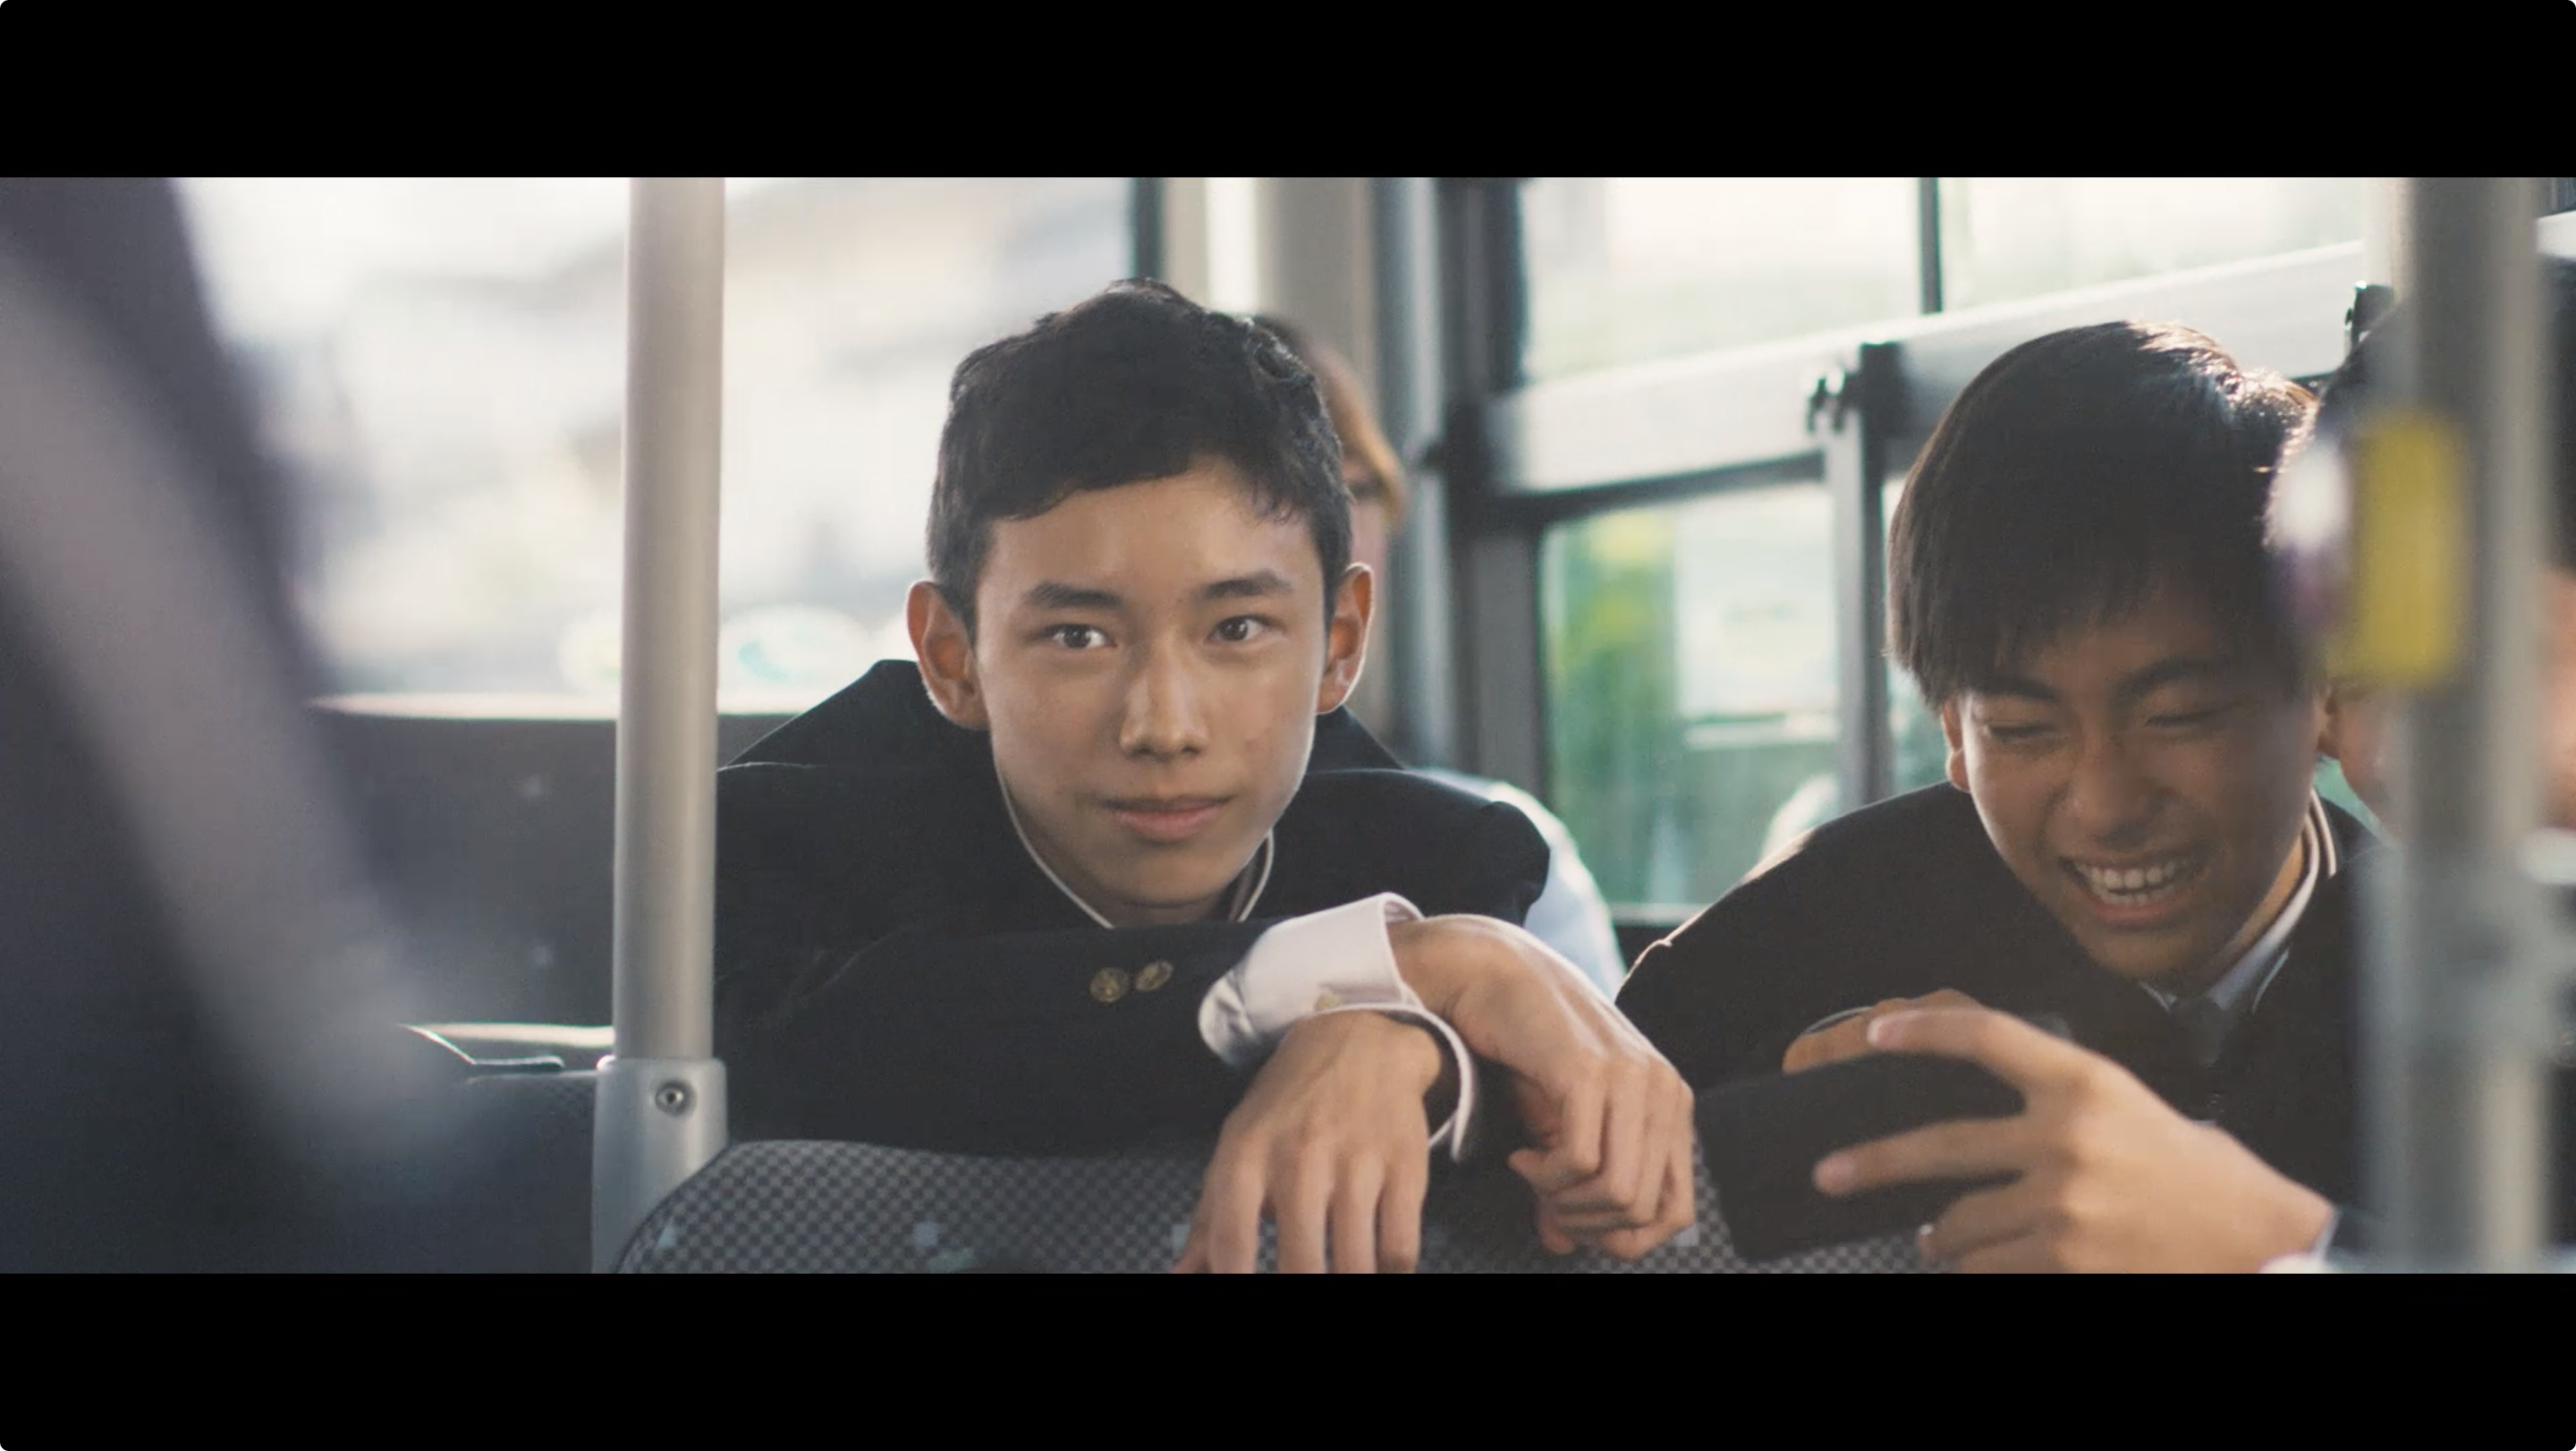 バスの座席でスマートフォンを見ながら笑いあう男子中学生。